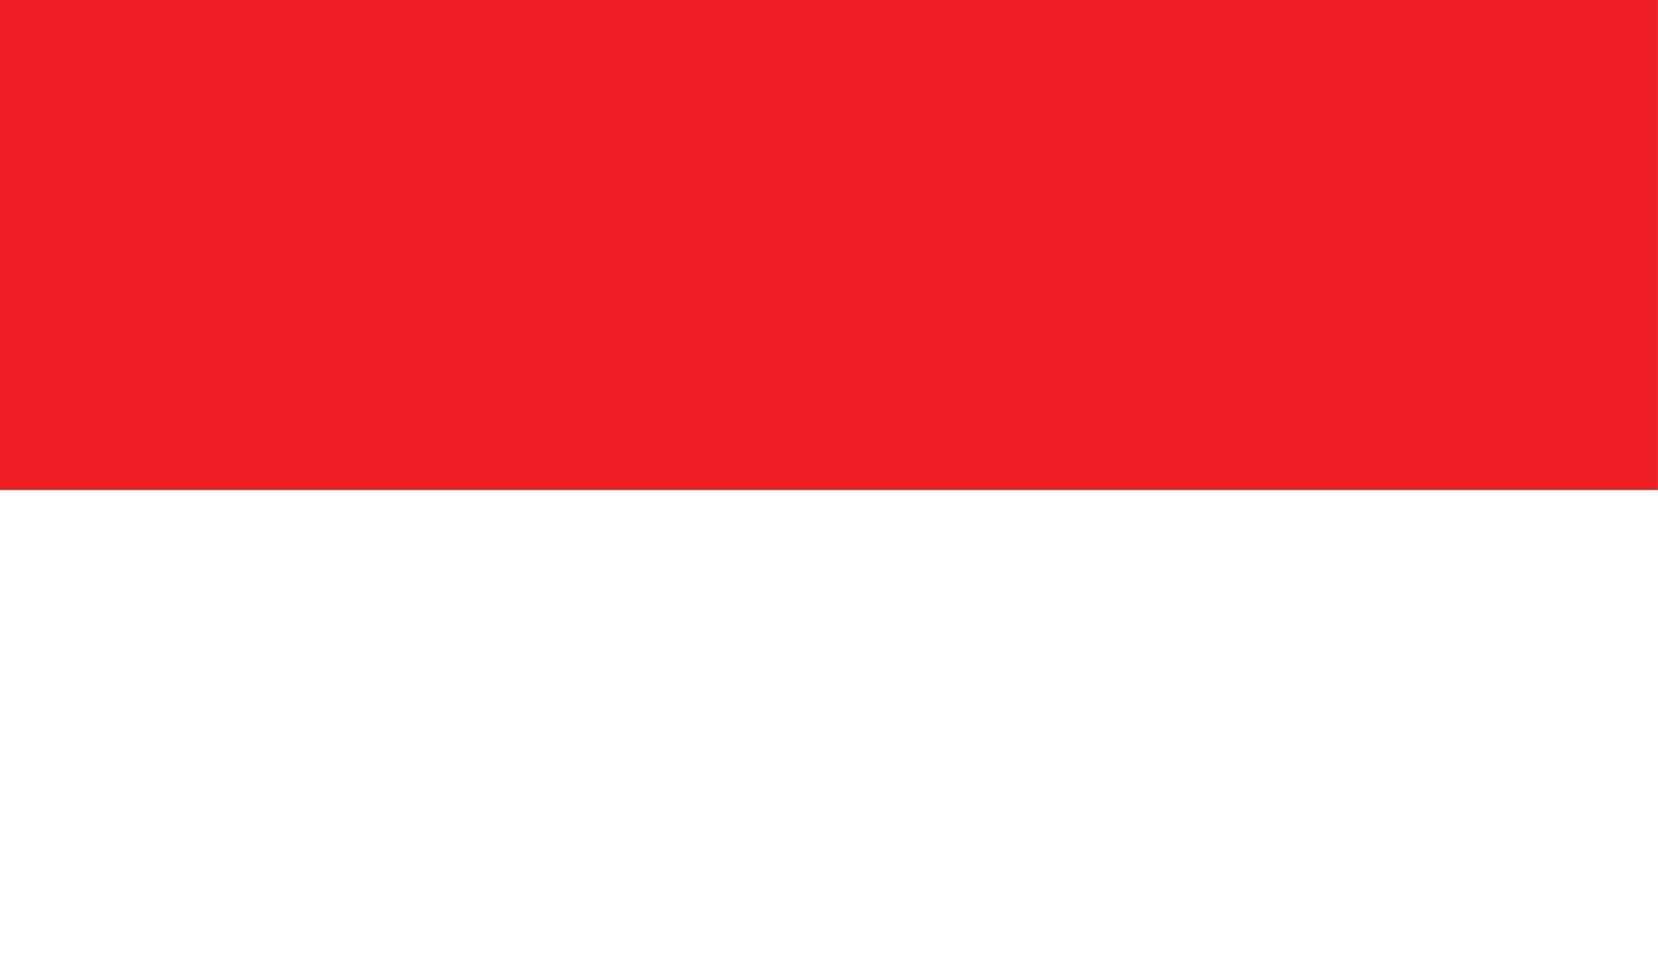 vektor flagga av Indonesien. exakt mått och officiell färger. symbol av patriotism och frihet.